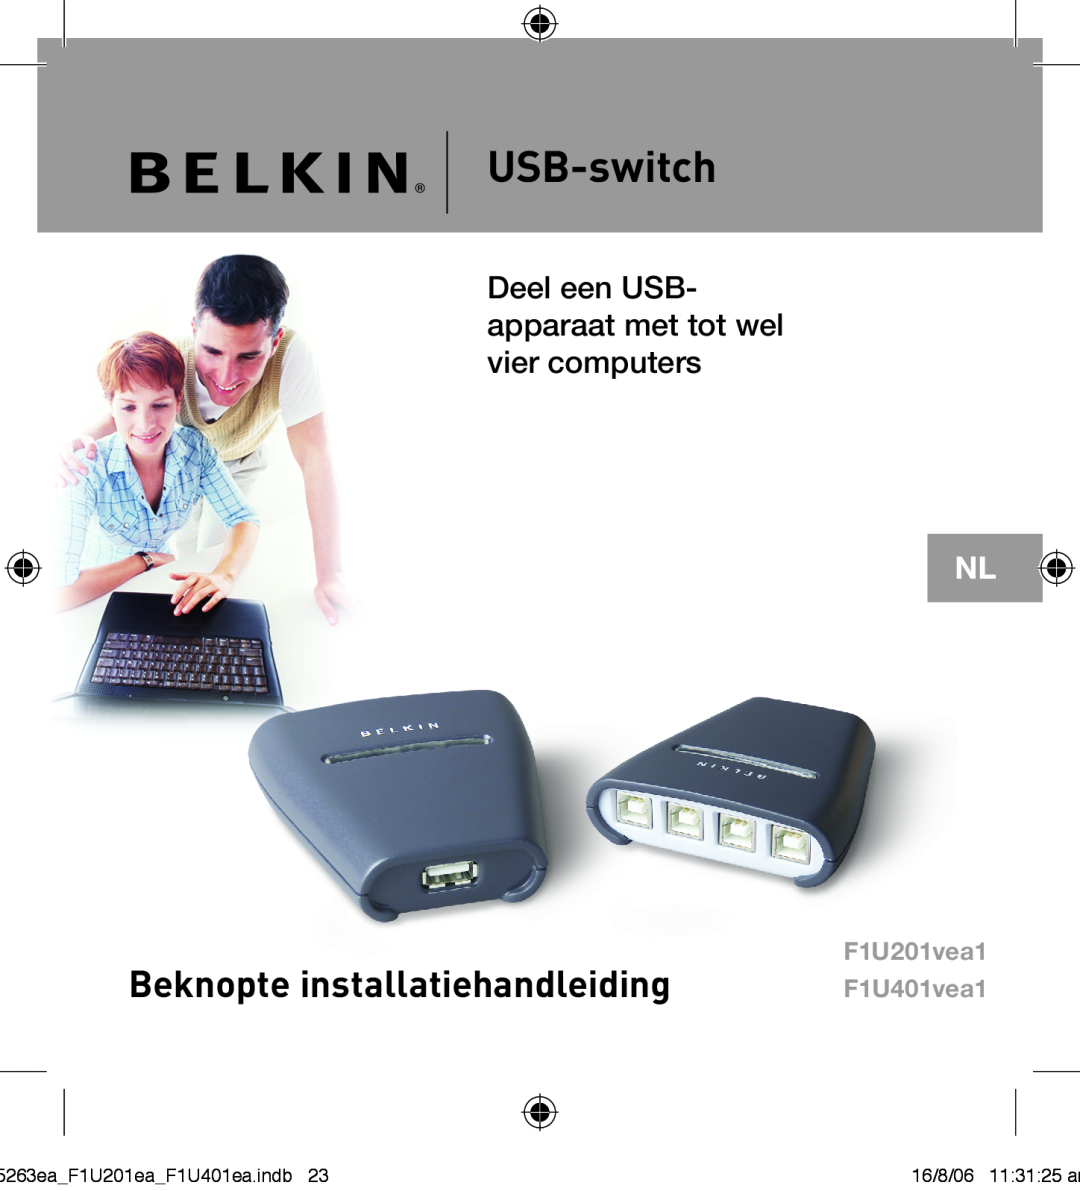 Belkin F1U201VEA1 manual USB-switch, Beknopte installatiehandleiding, Deel een USB- apparaat met tot wel vier computers 